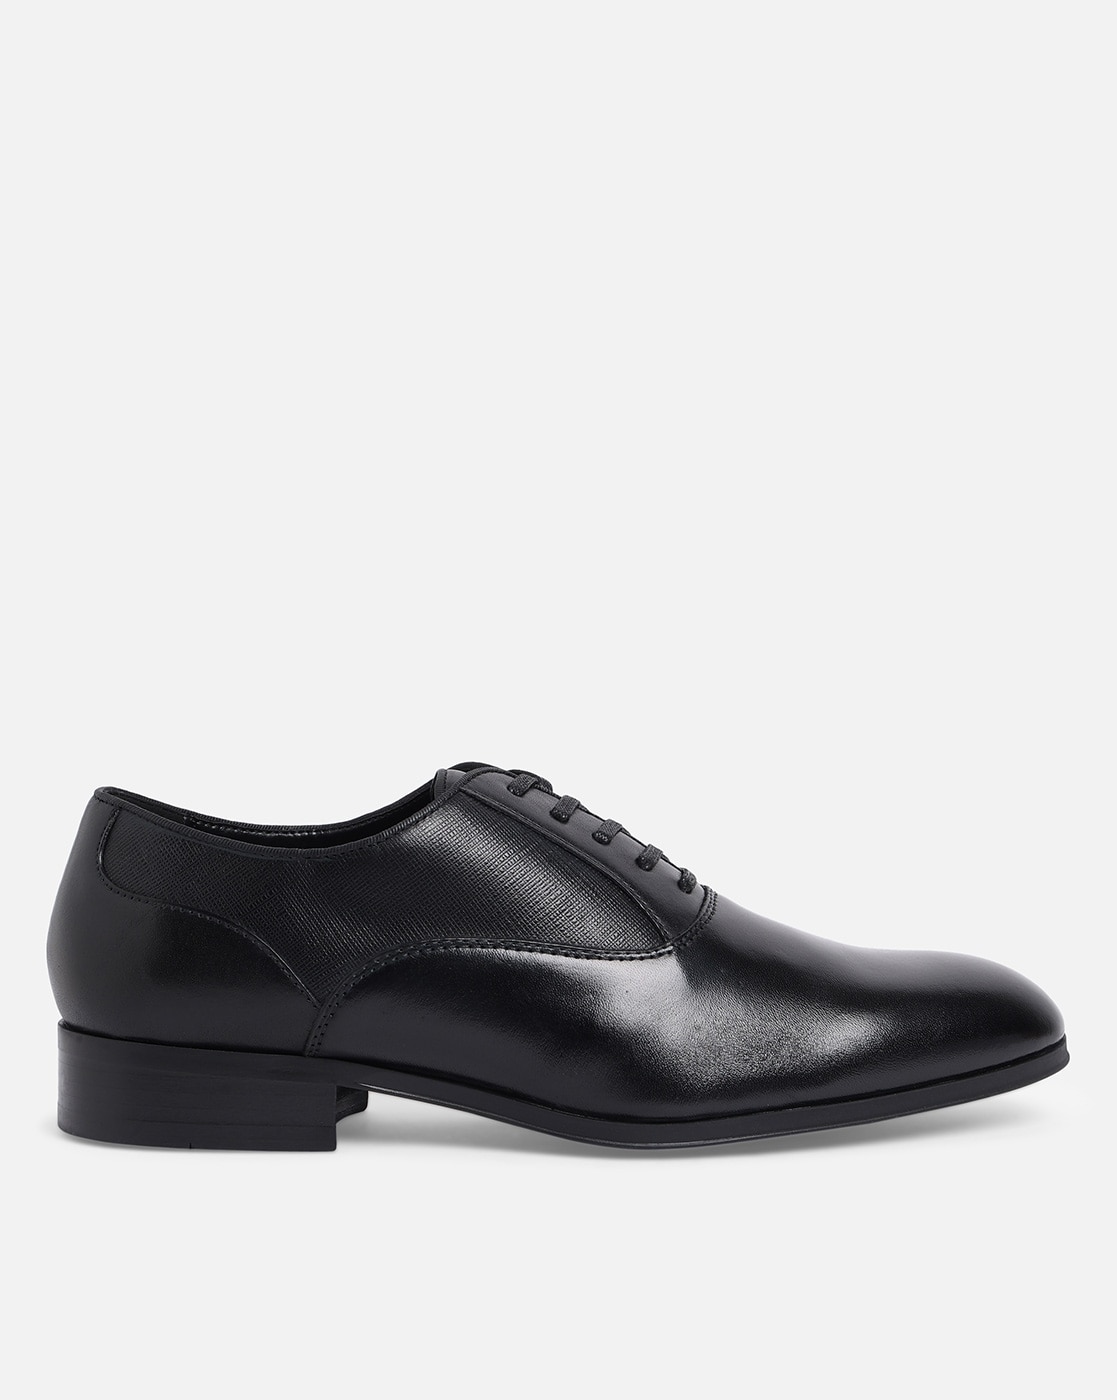 Buy Black Shoes for Men Aldo Online Ajio.com